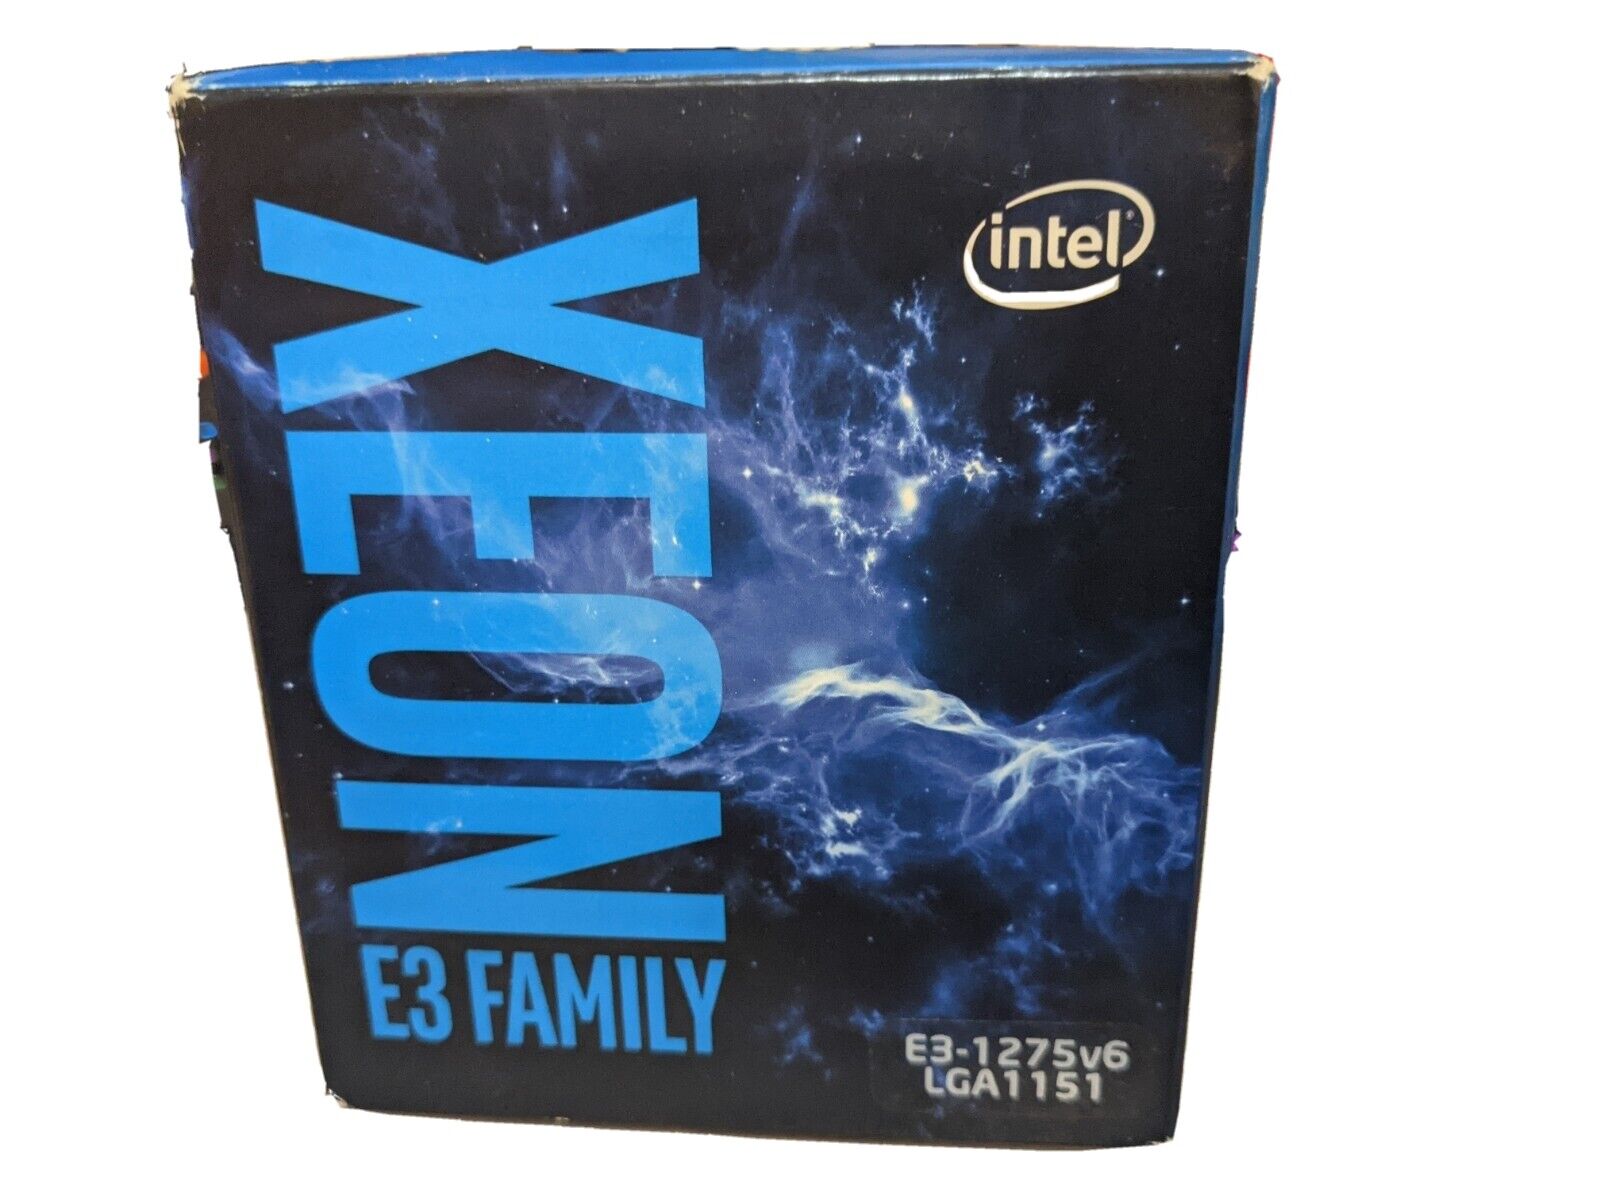 Intel Xeon E3-1275 V6 Quad-Core 3.8GHz Server Processor - BX80677E31275V6 NEW